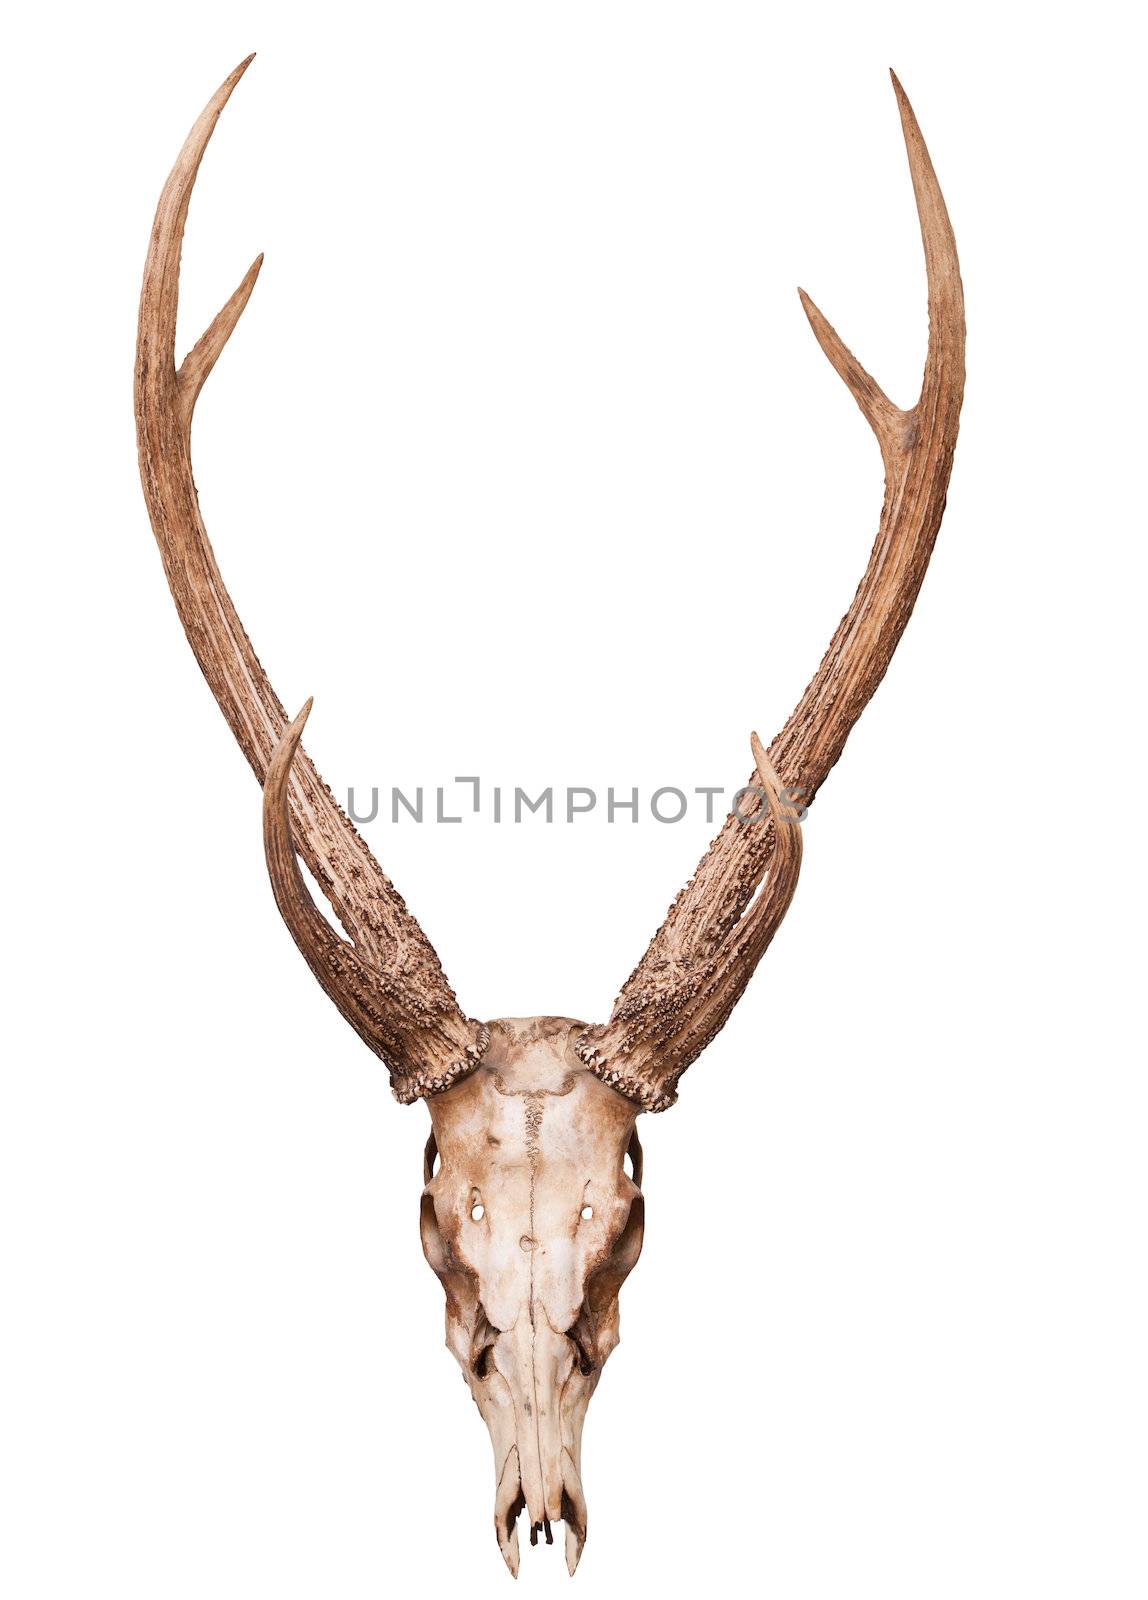 samba deer skull horn isolated on white backgorund use for multipurpose